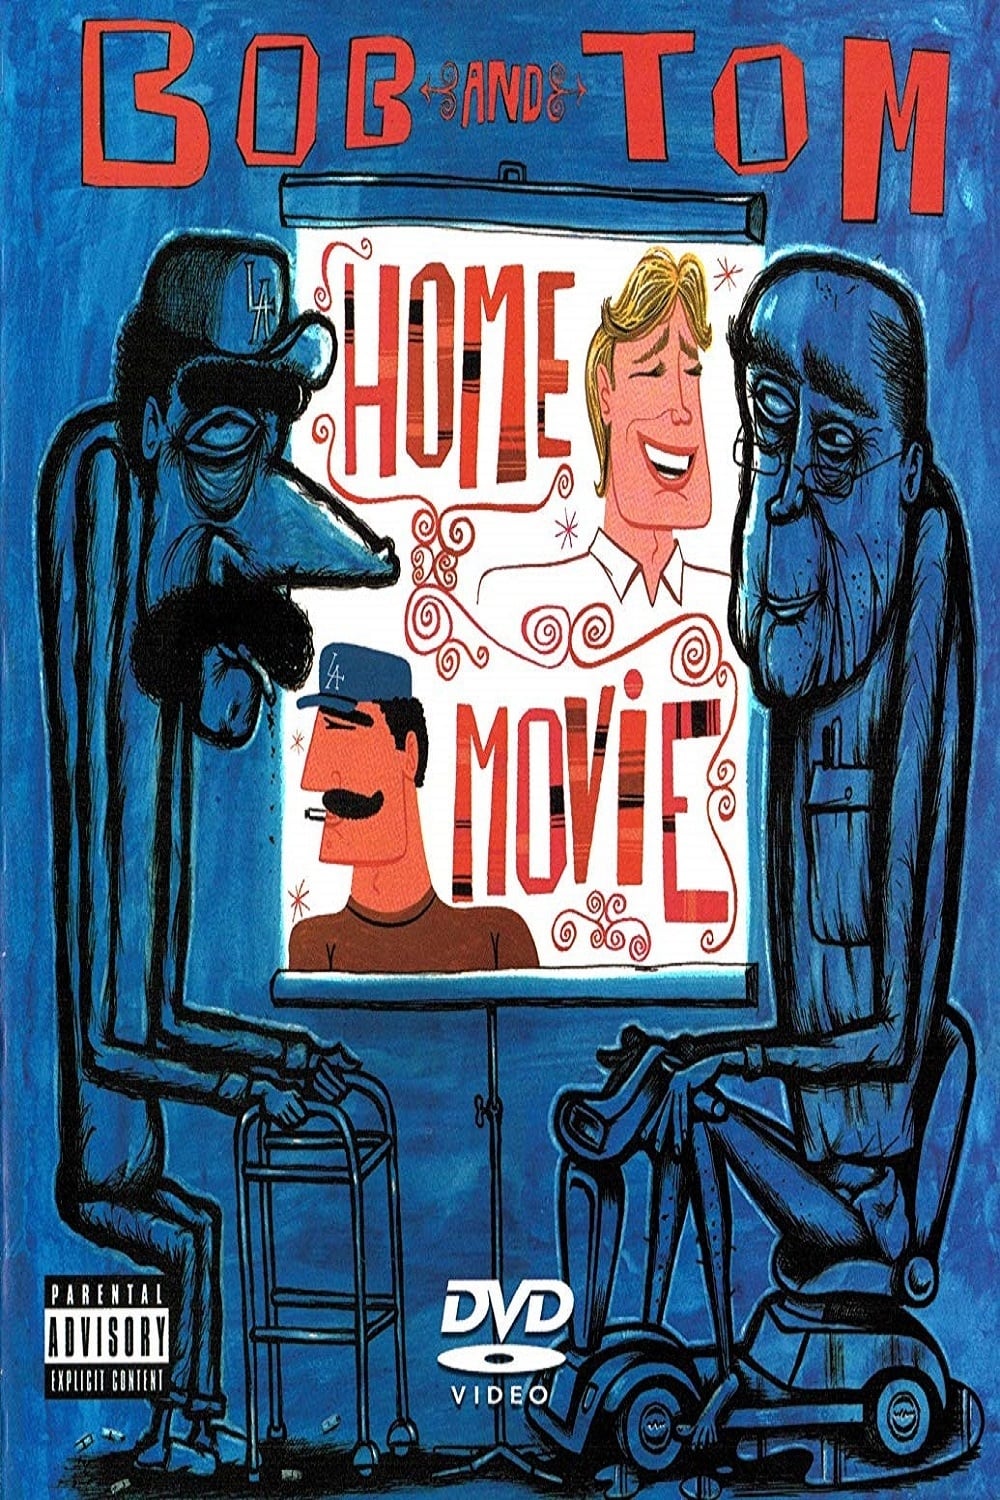 Bob and Tom Show Home Movie